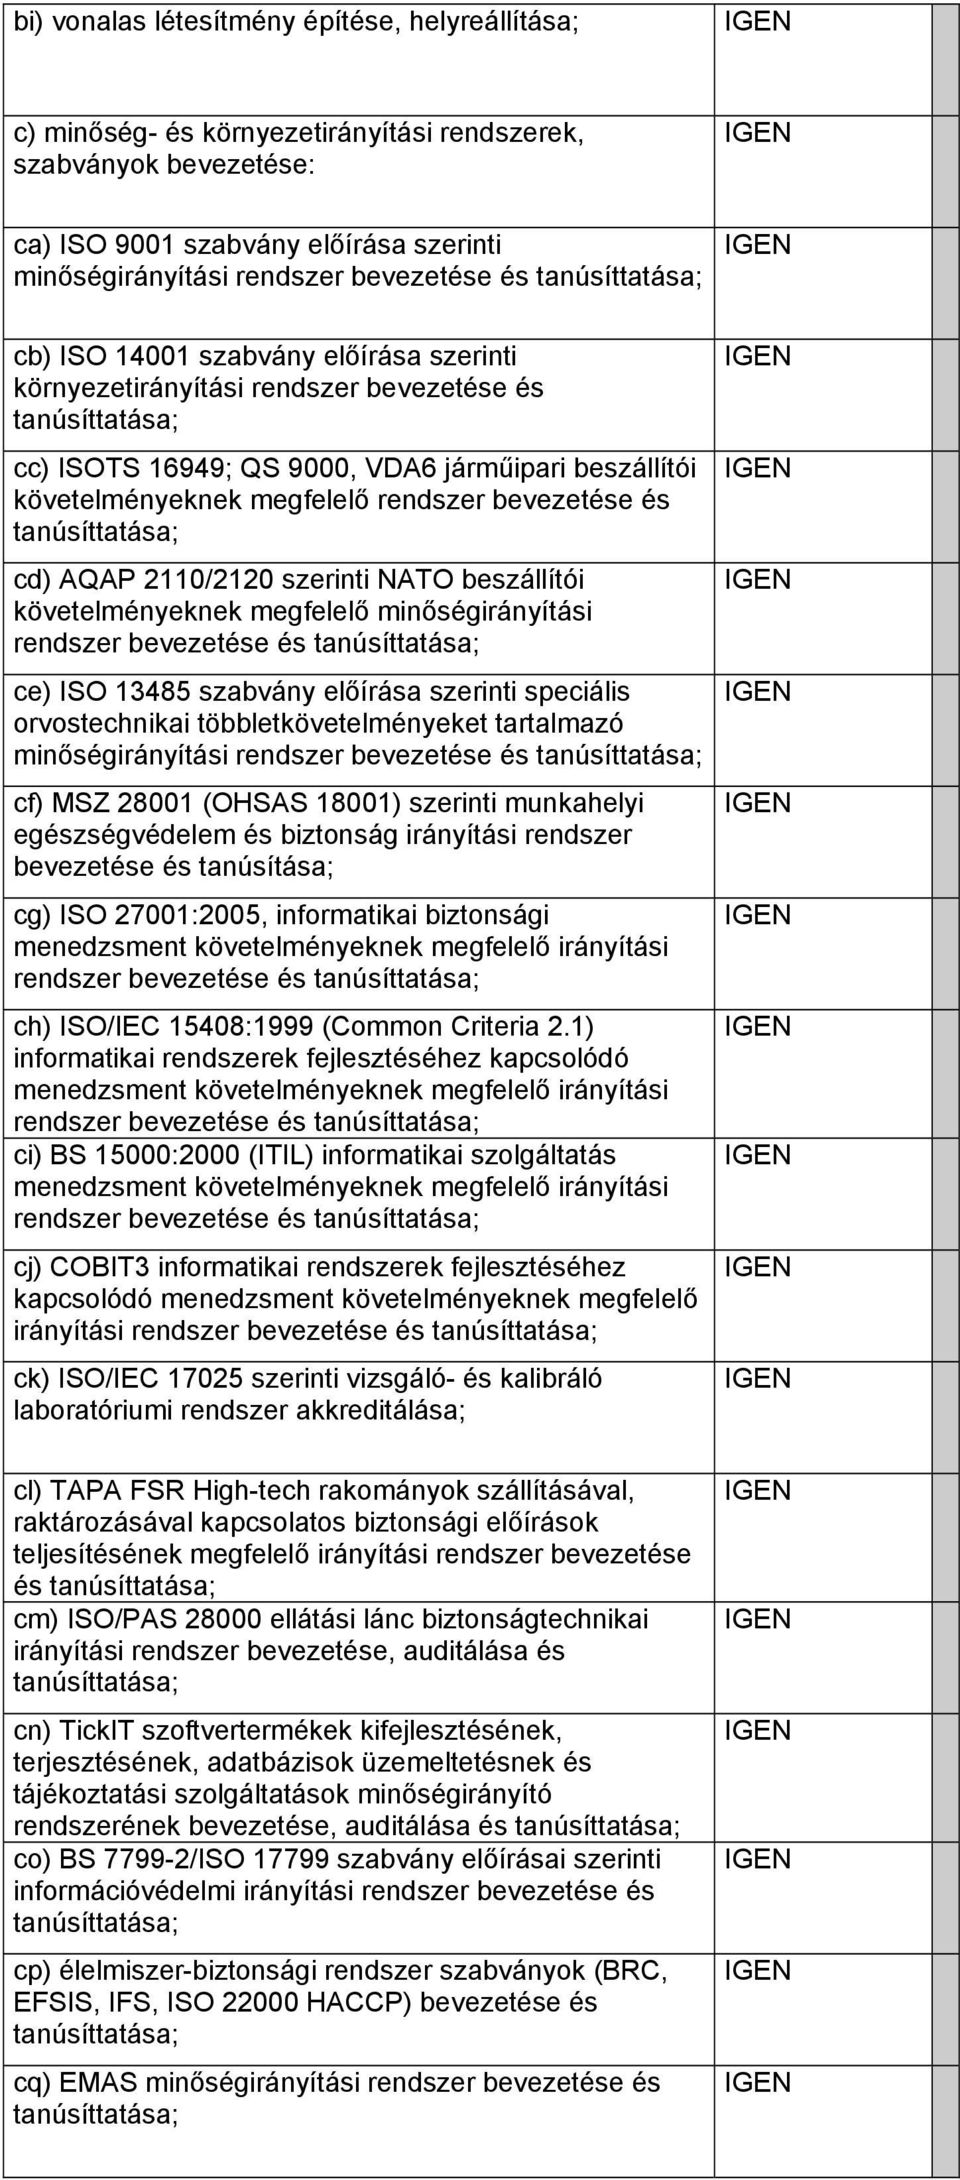 2110/2120 szerinti NATO beszállítói követelményeknek megfelelő minőségirányítási rendszer bevezetése és ce) ISO 13485 szabvány előírása szerinti speciális orvostechnikai többletkövetelményeket